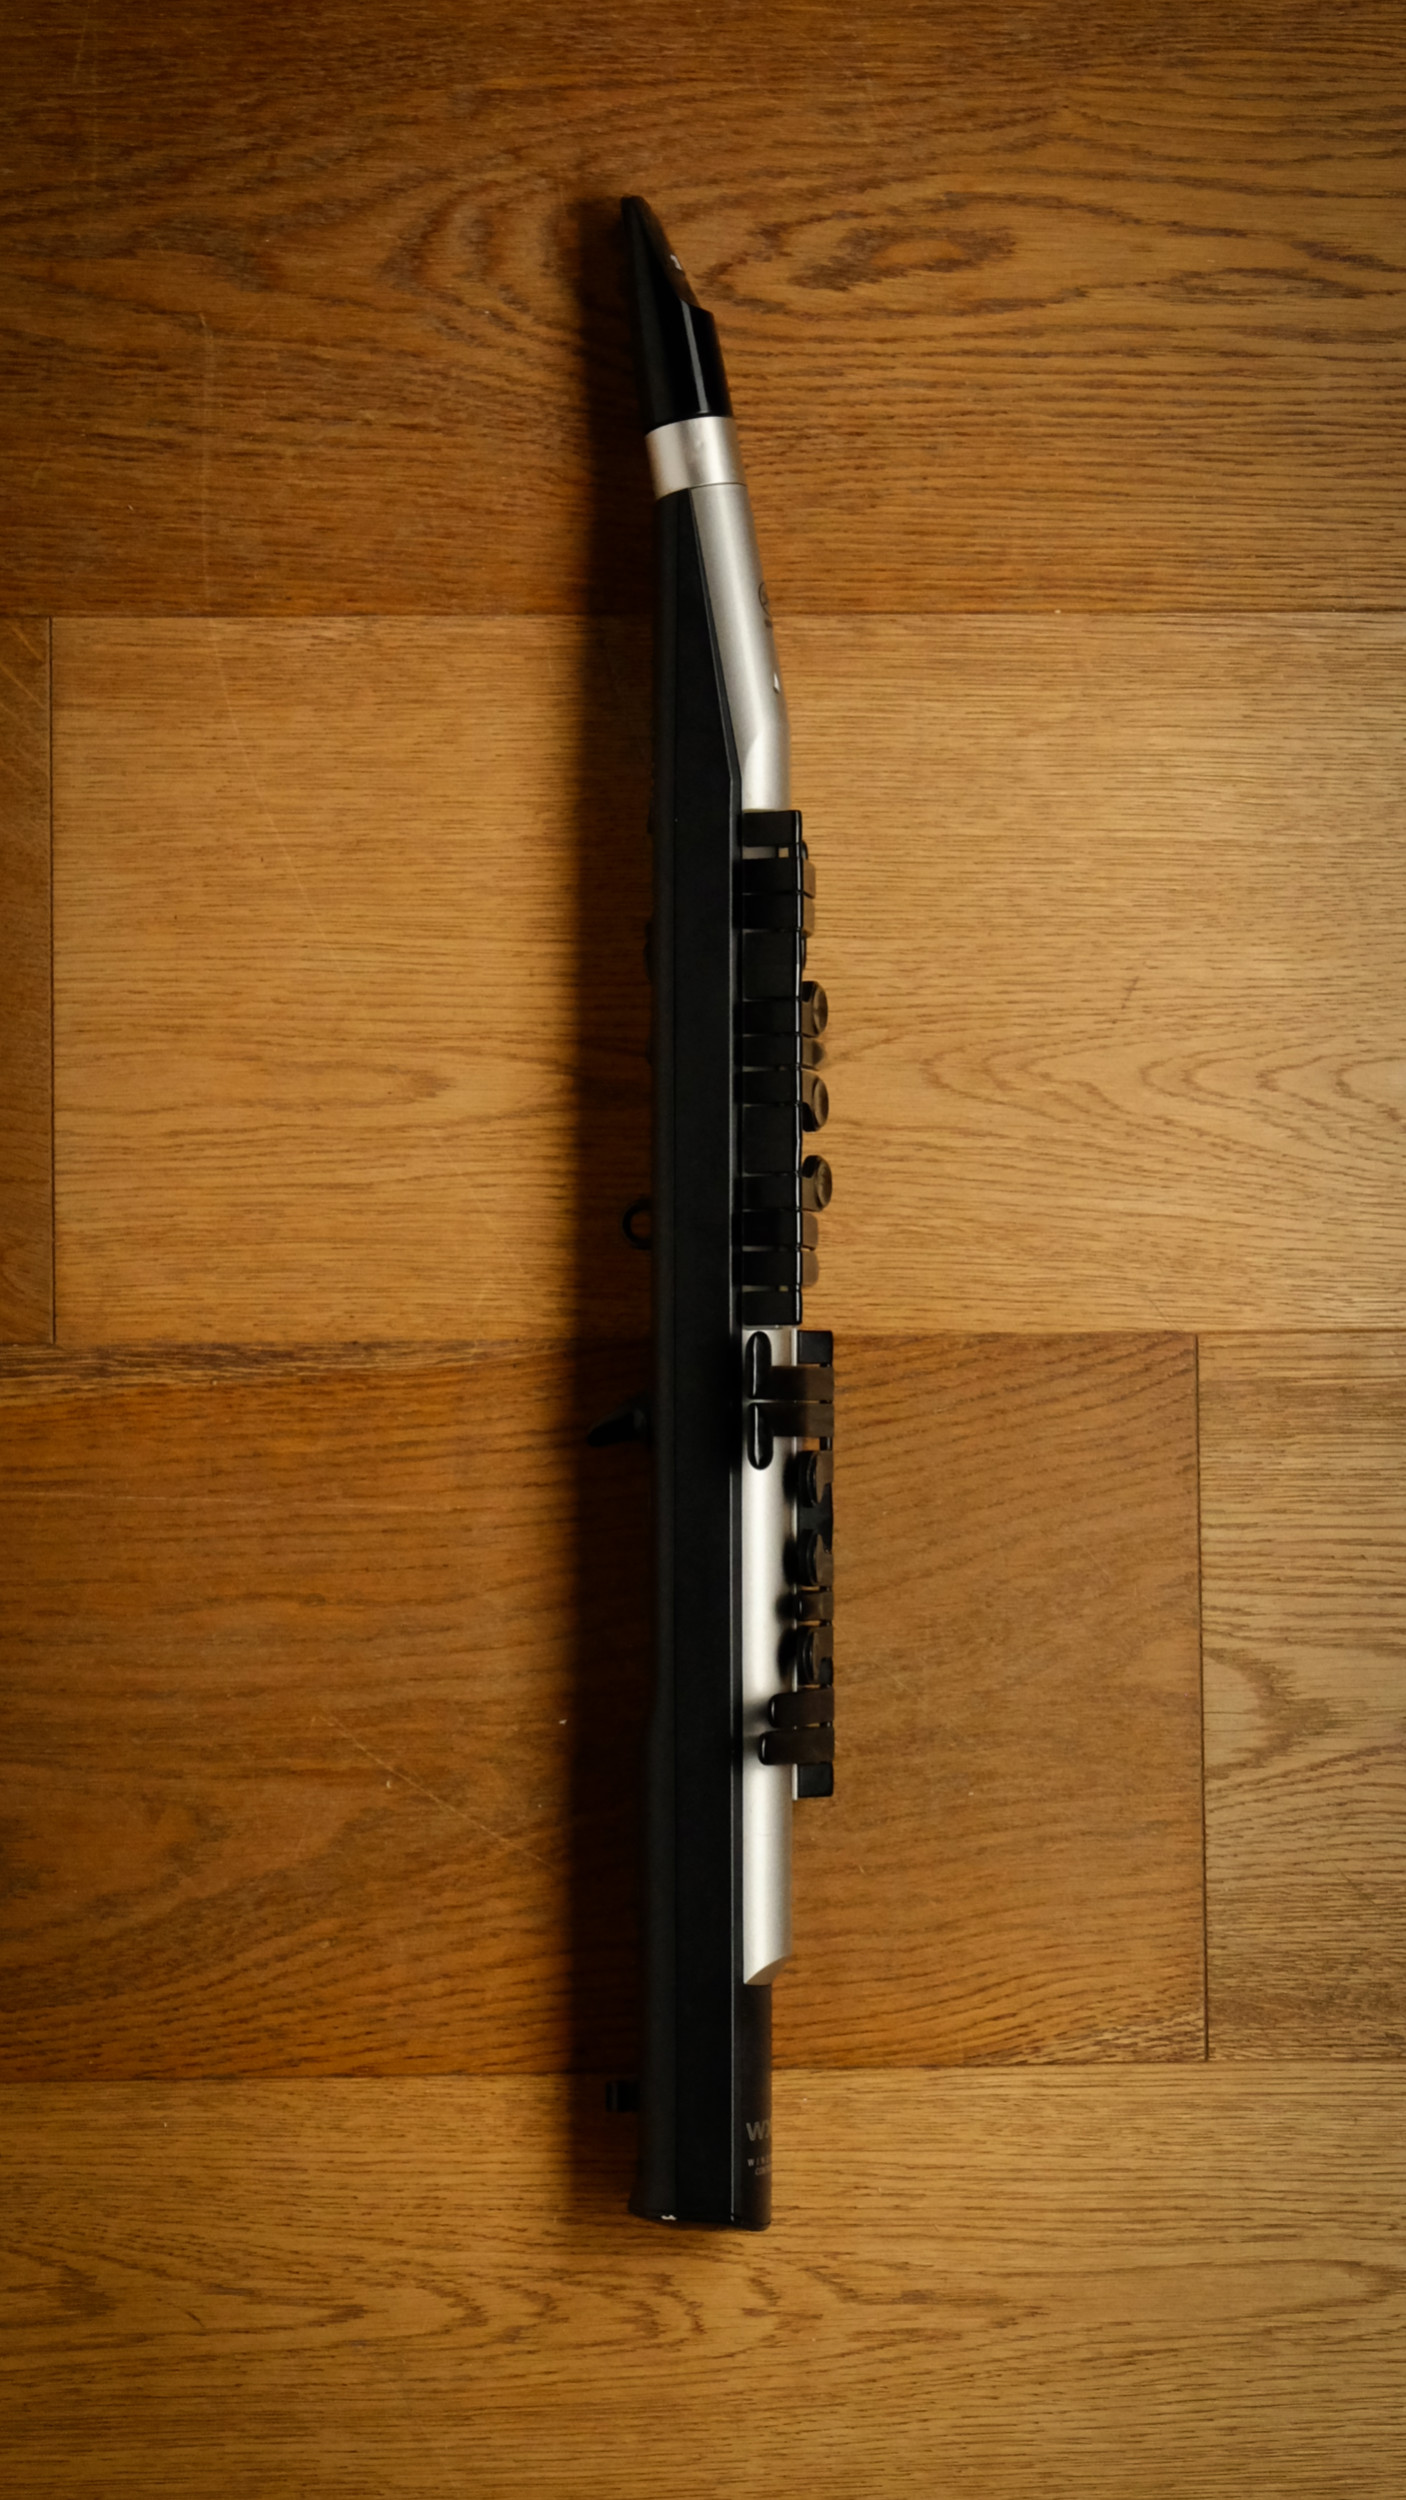 (Used) Yamaha WX-5 Digital Wind Instrument 